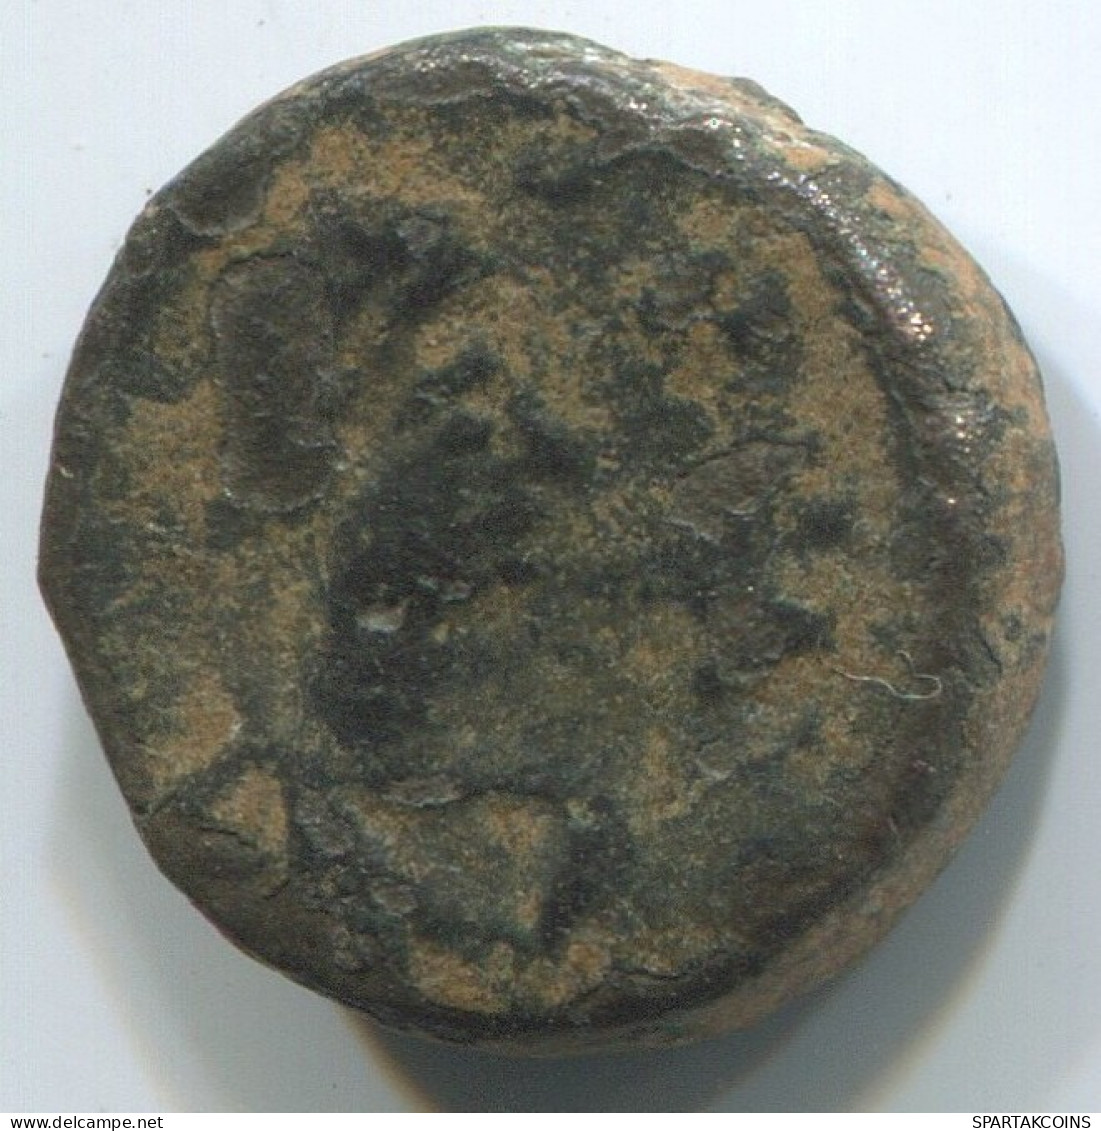 Authentische Antike Spätrömische Münze RÖMISCHE Münze 2.1g/14mm #ANT2450.14.D.A - El Bajo Imperio Romano (363 / 476)